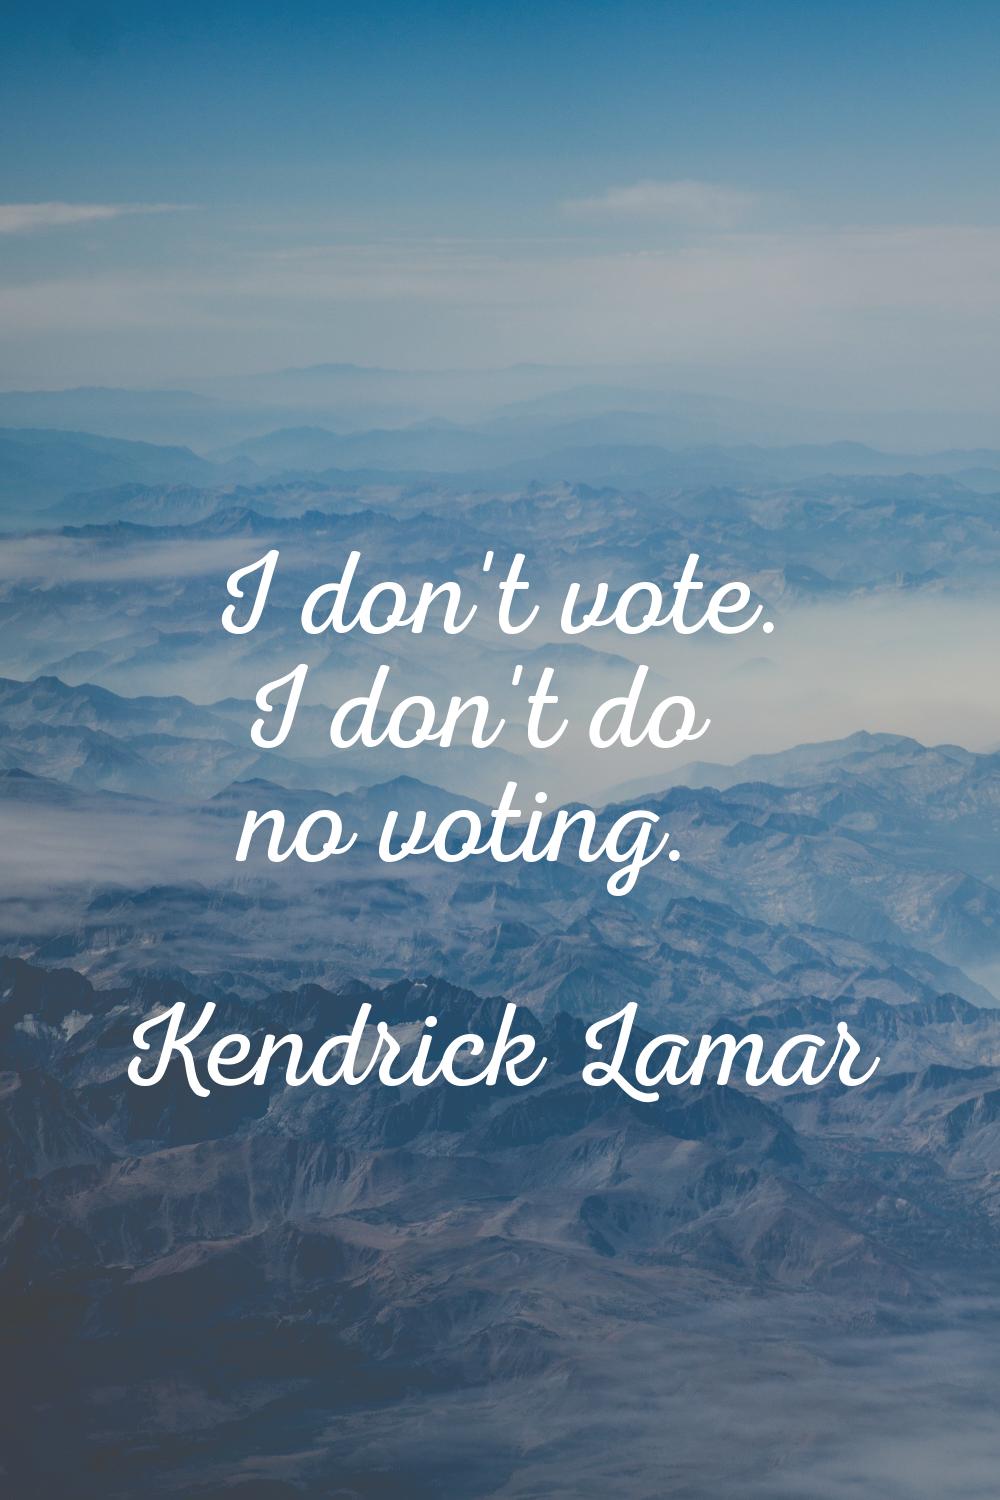 I don't vote. I don't do no voting.